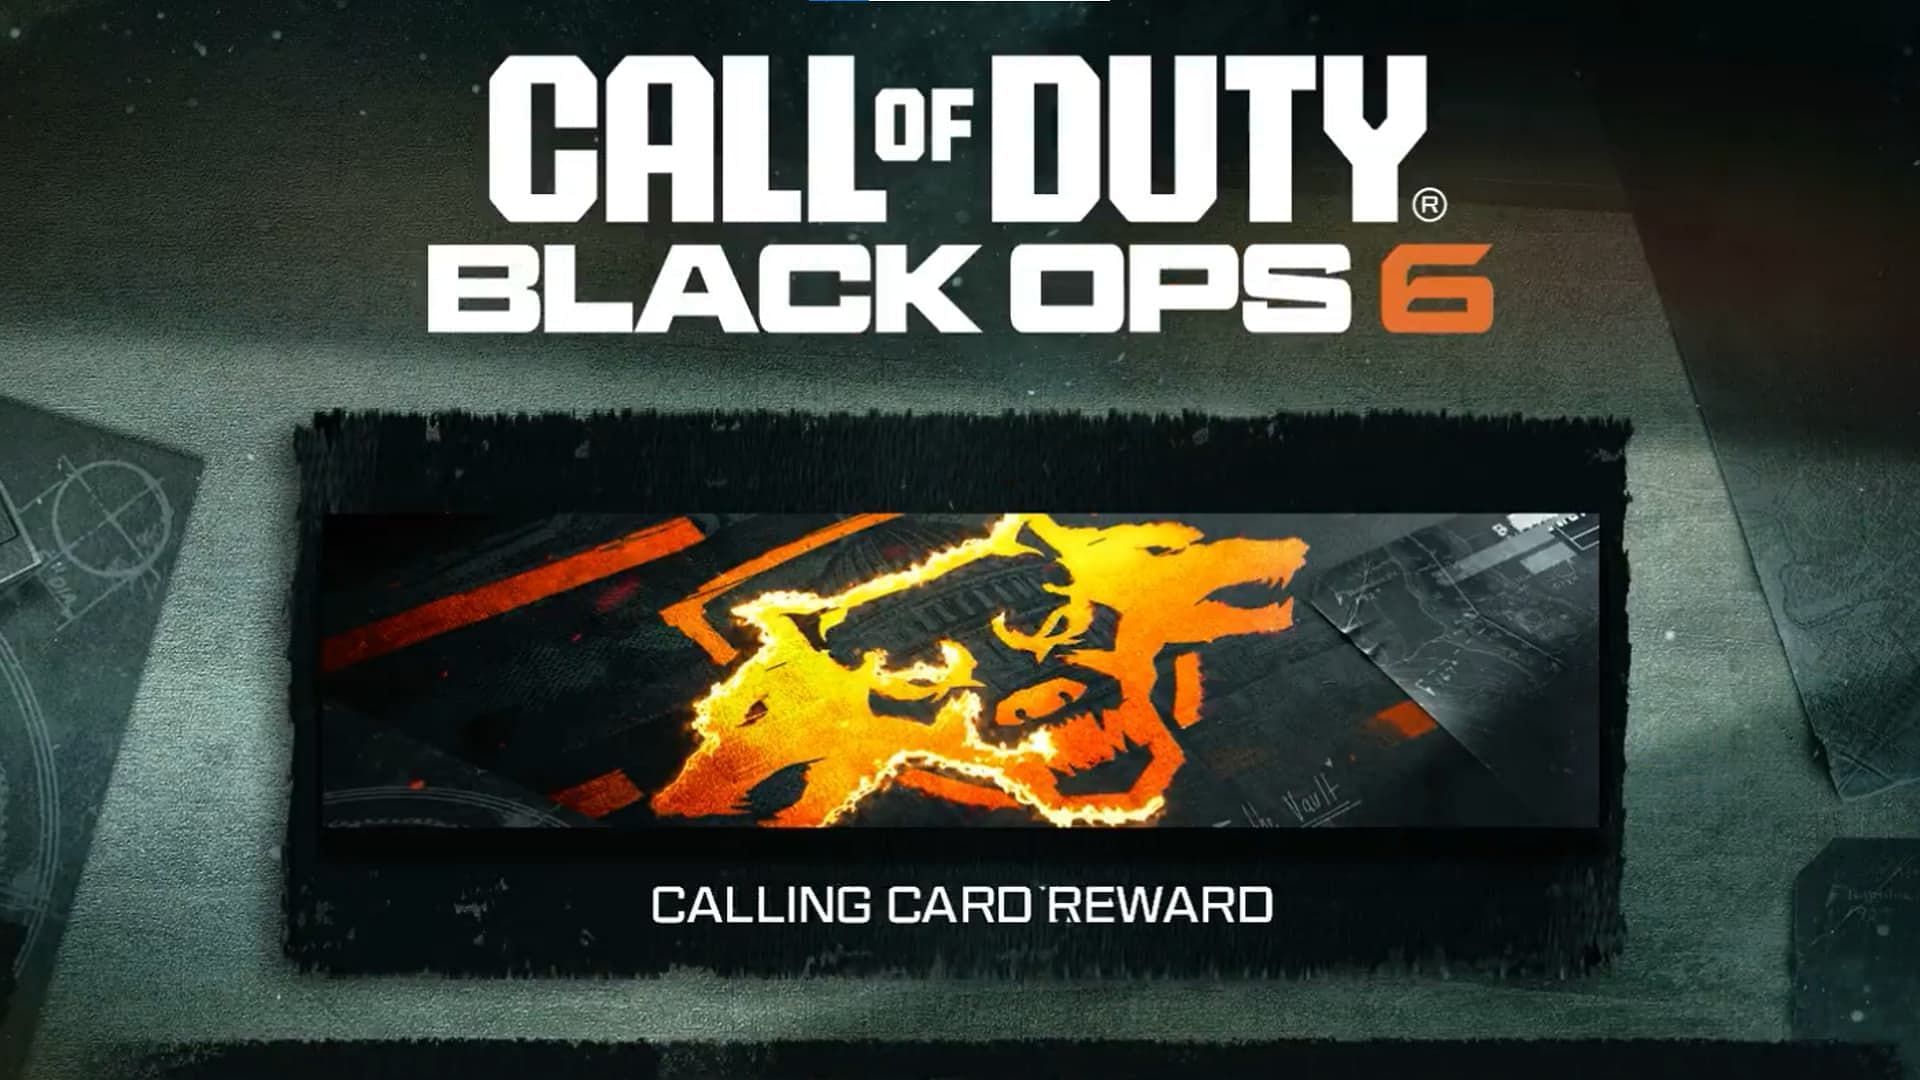 Black Ops 6 launch rewards